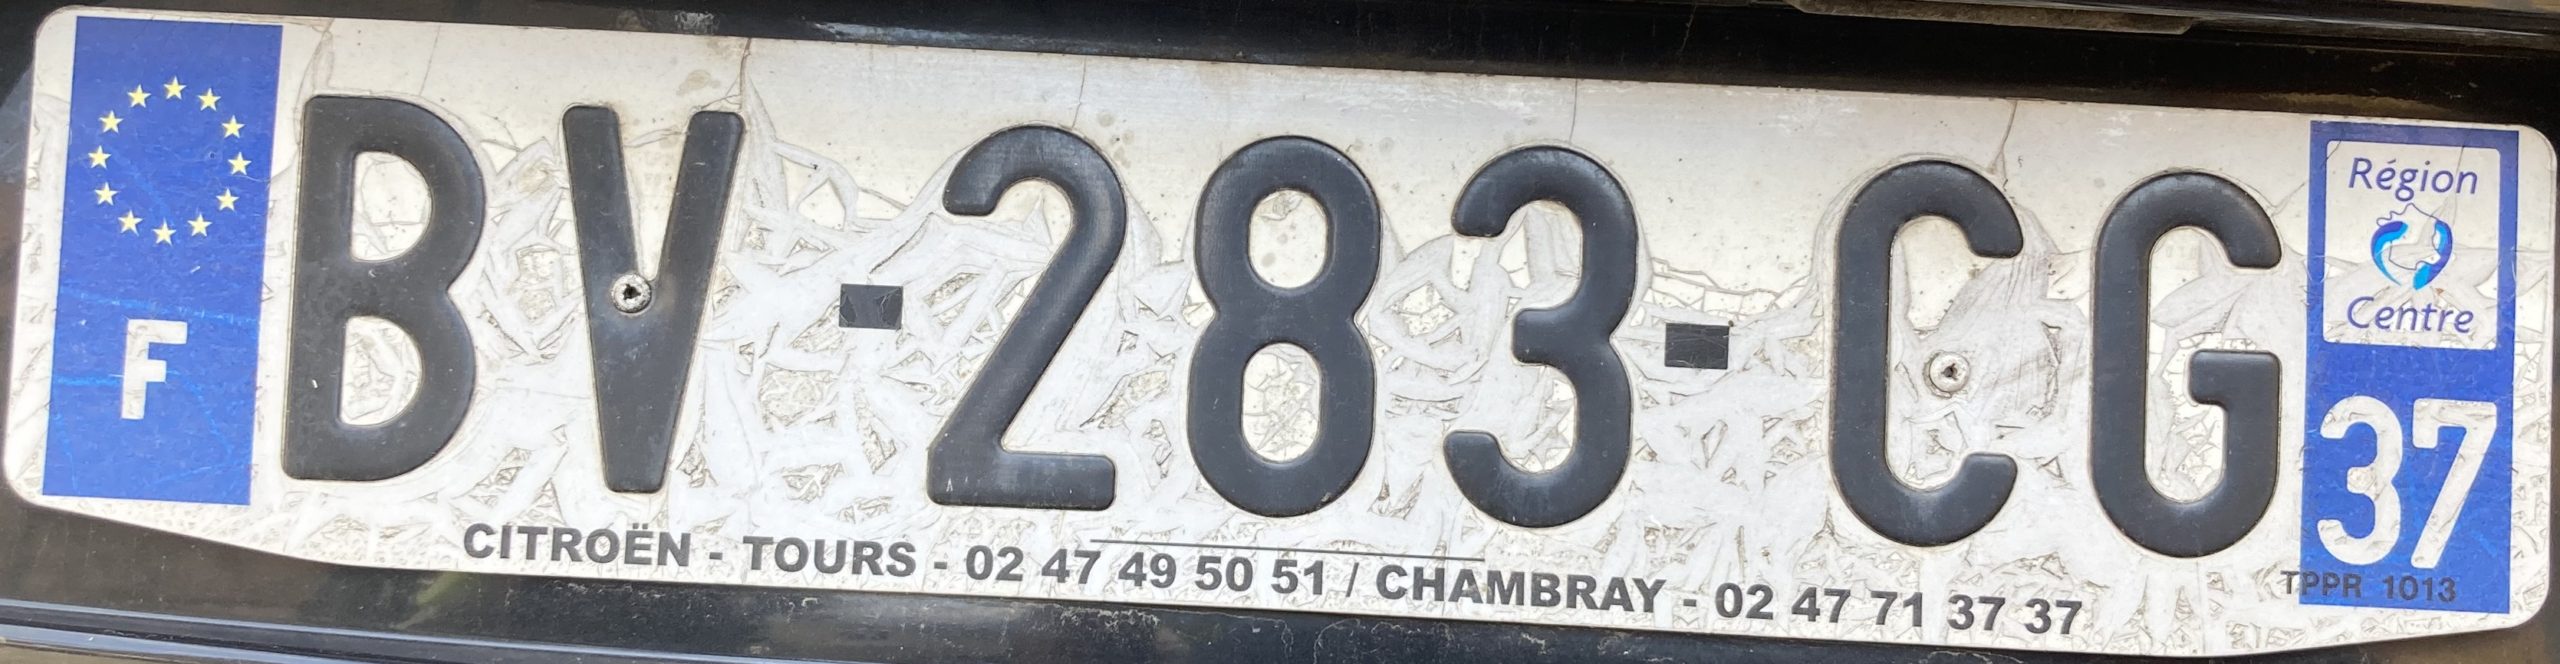 Francouzská registrační značka – 37 – Indre-et-Loire, foto: www.podalnici.cz